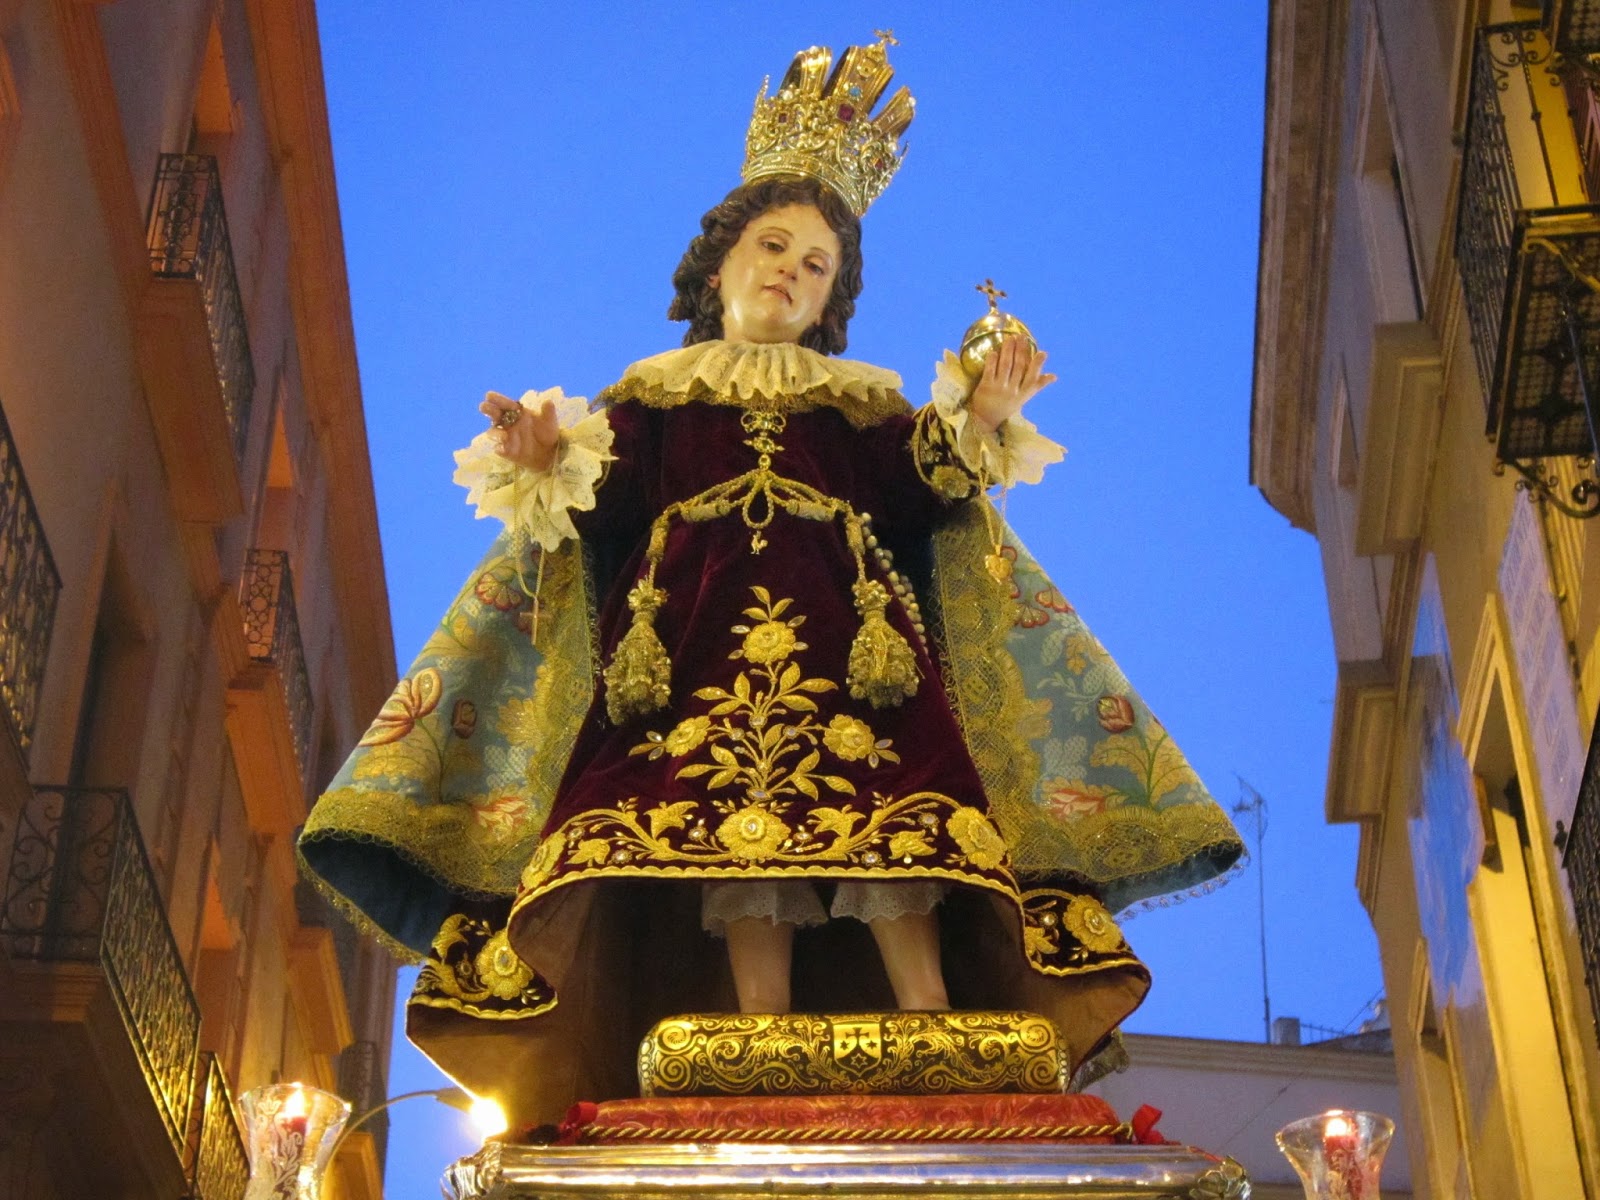 El Milagroso Niño Jesús de Praga en Santa María de la Victoria, Rep. Checa (14 ene, 1er dgo jun)